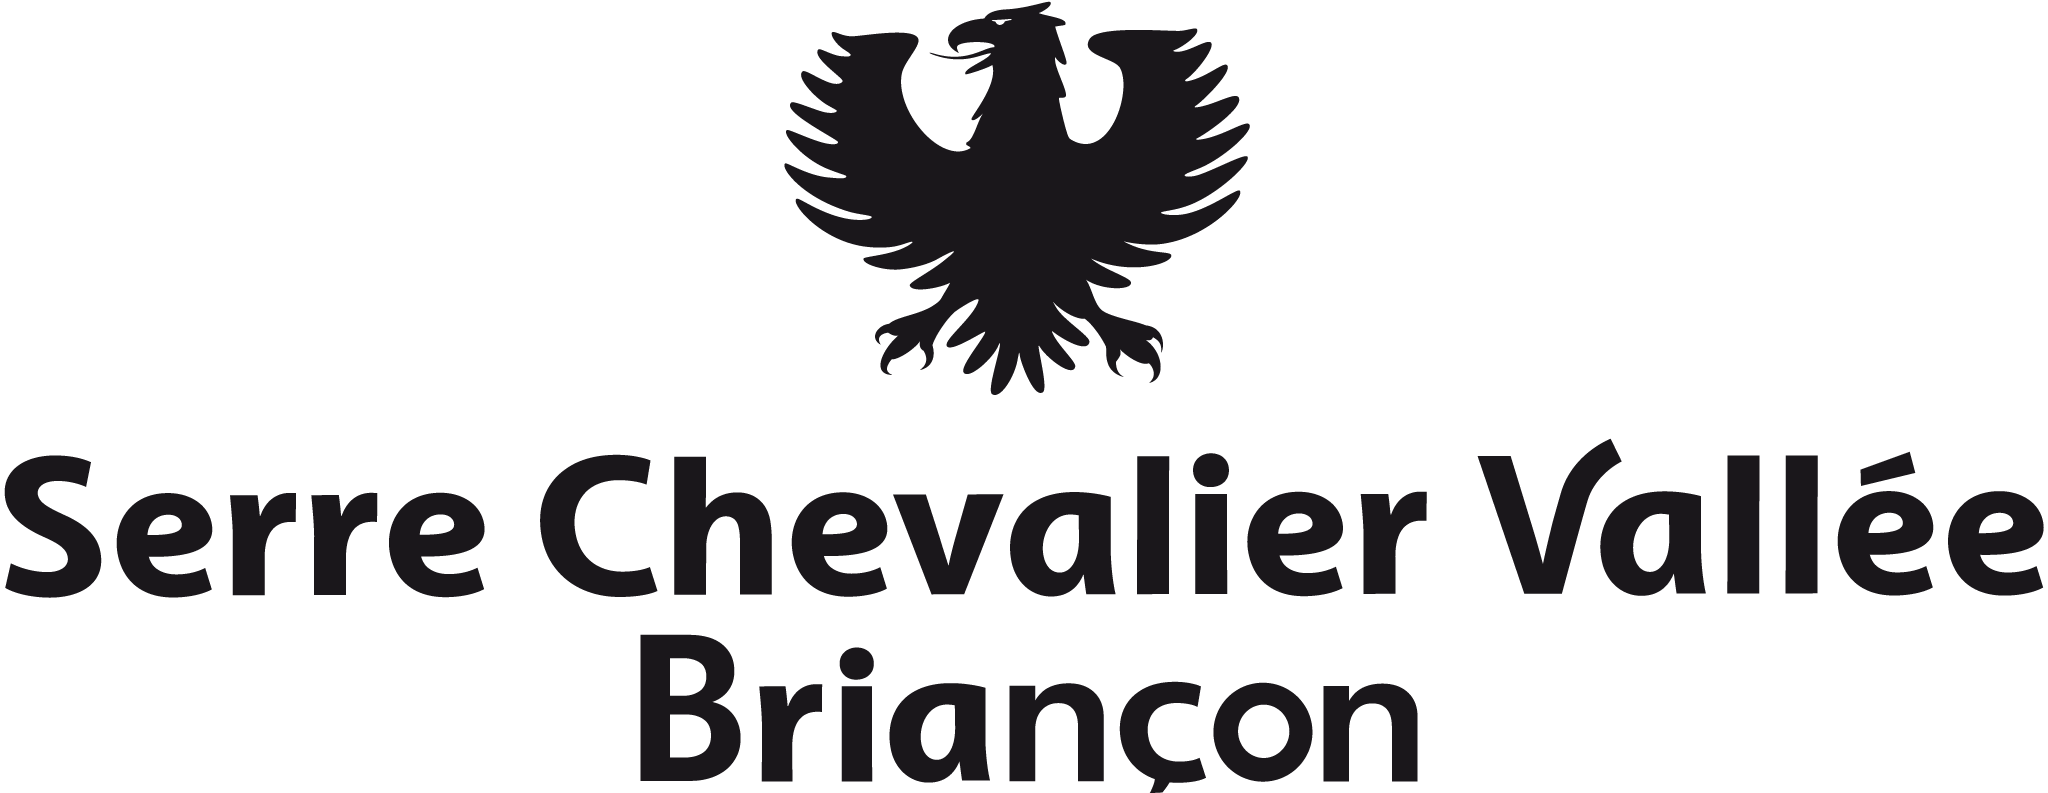 Logo du réseau Skibus Serre Chevalier